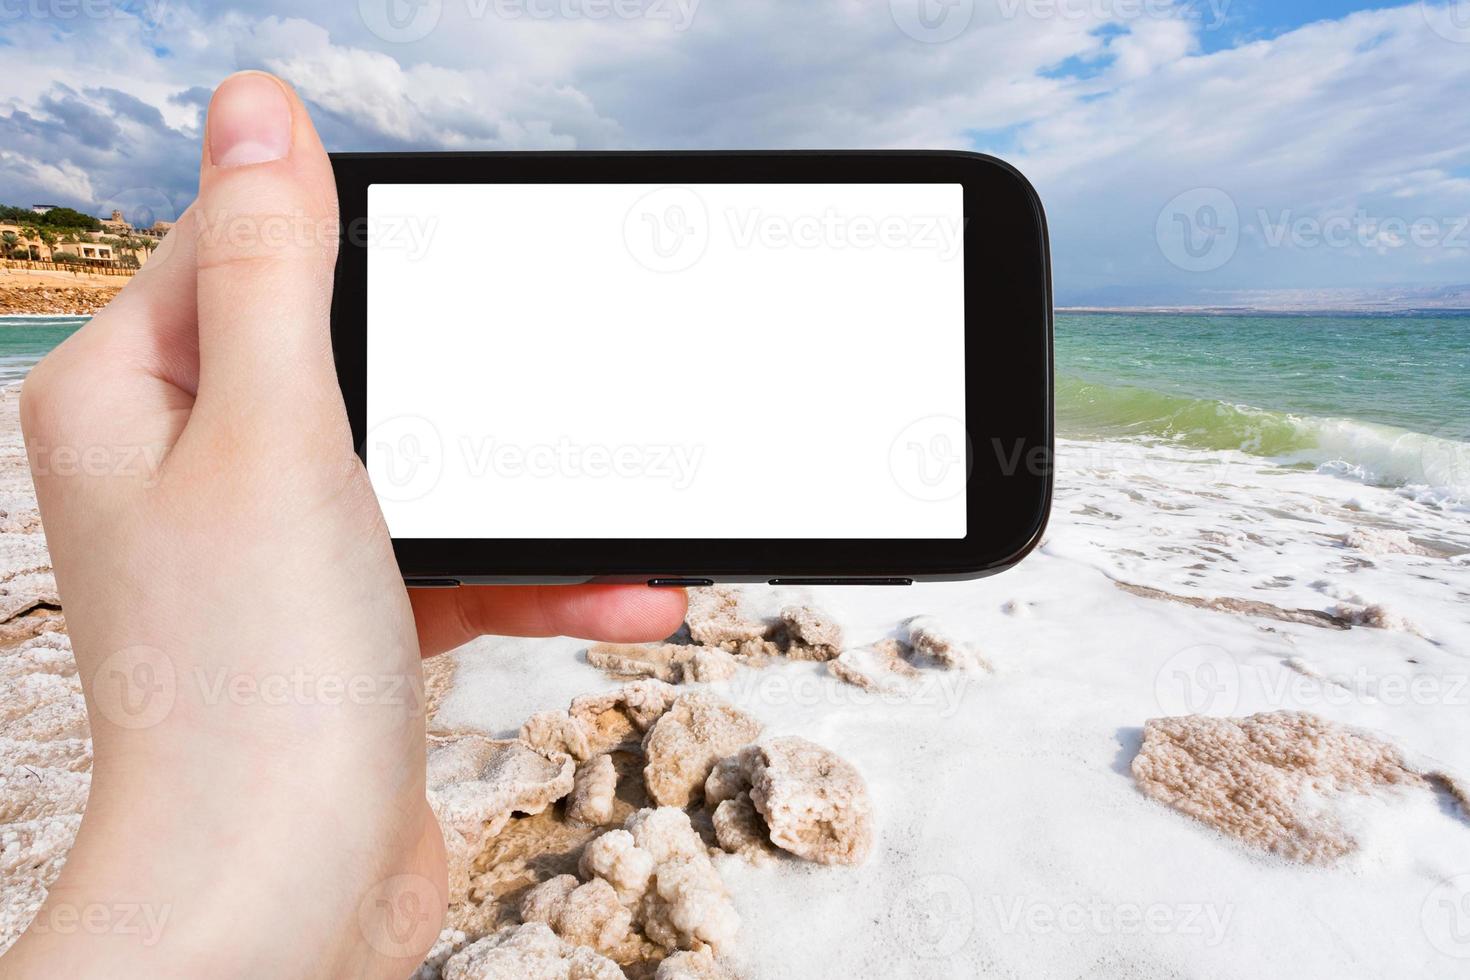 turista fotografie sale costa di morto mare